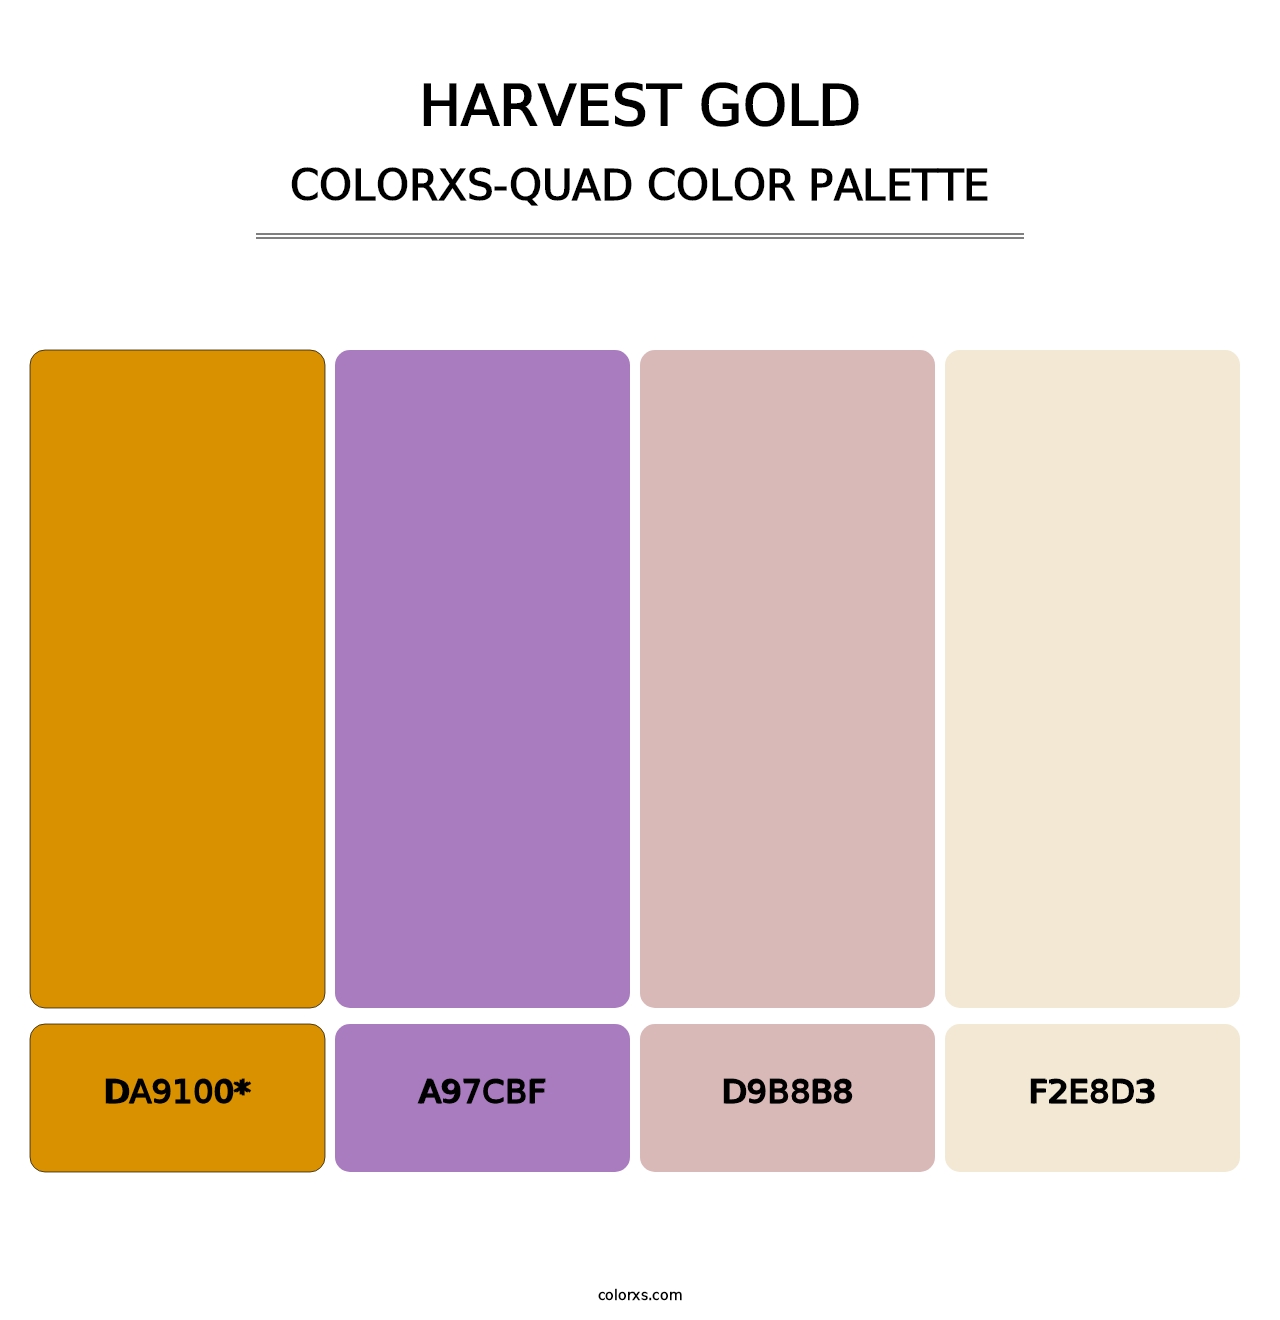 Harvest Gold - Colorxs Quad Palette